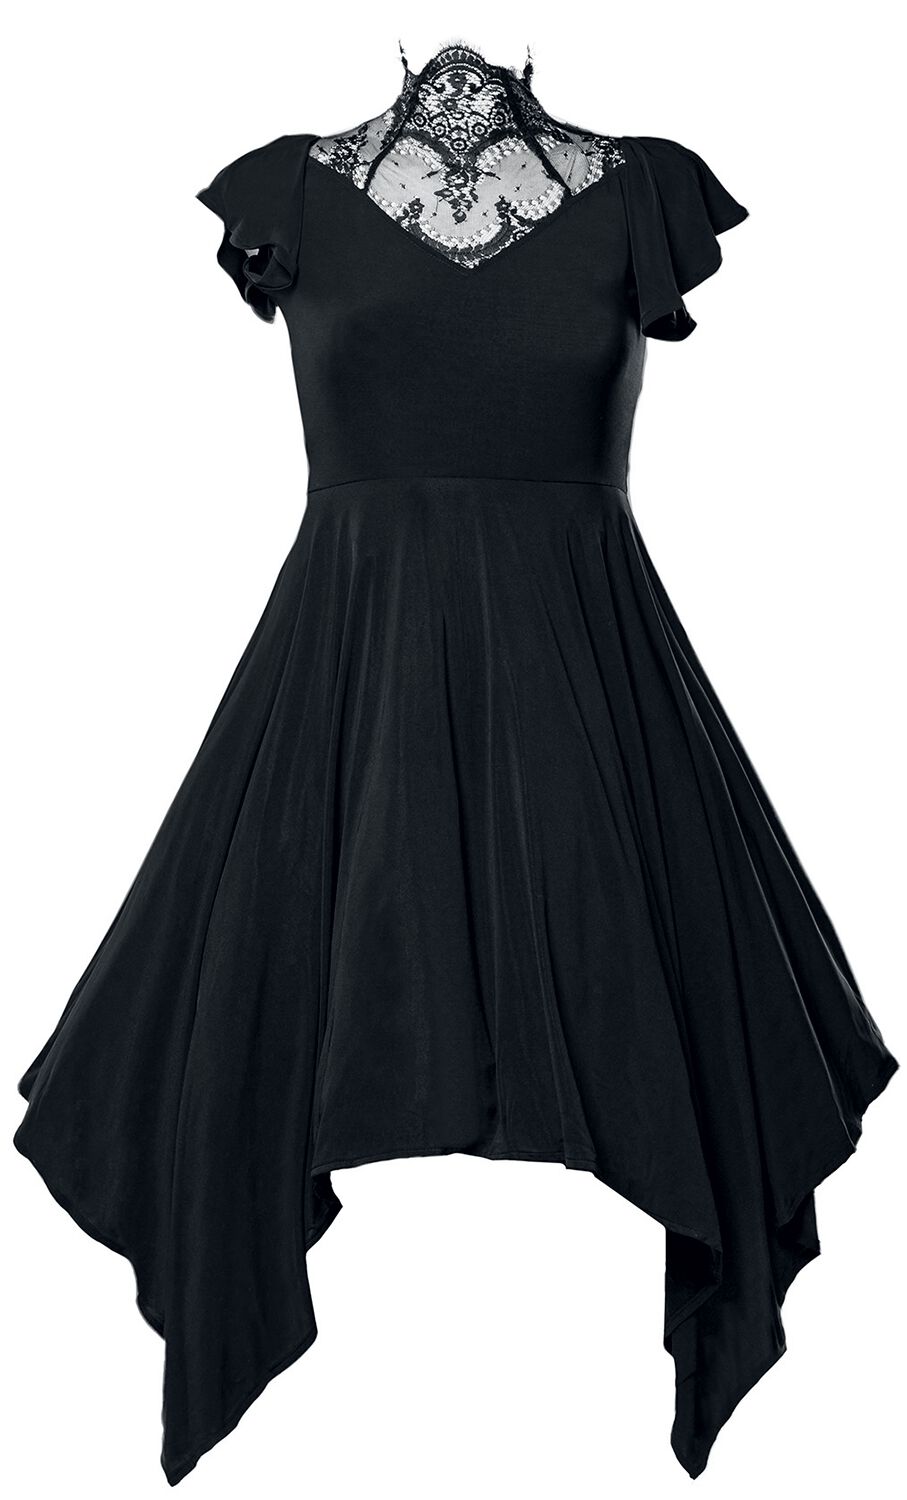 Ocultica - Gothic Kleid knielang - Gothic Kleid - S bis 4XL - für Damen - Größe 4XL - schwarz